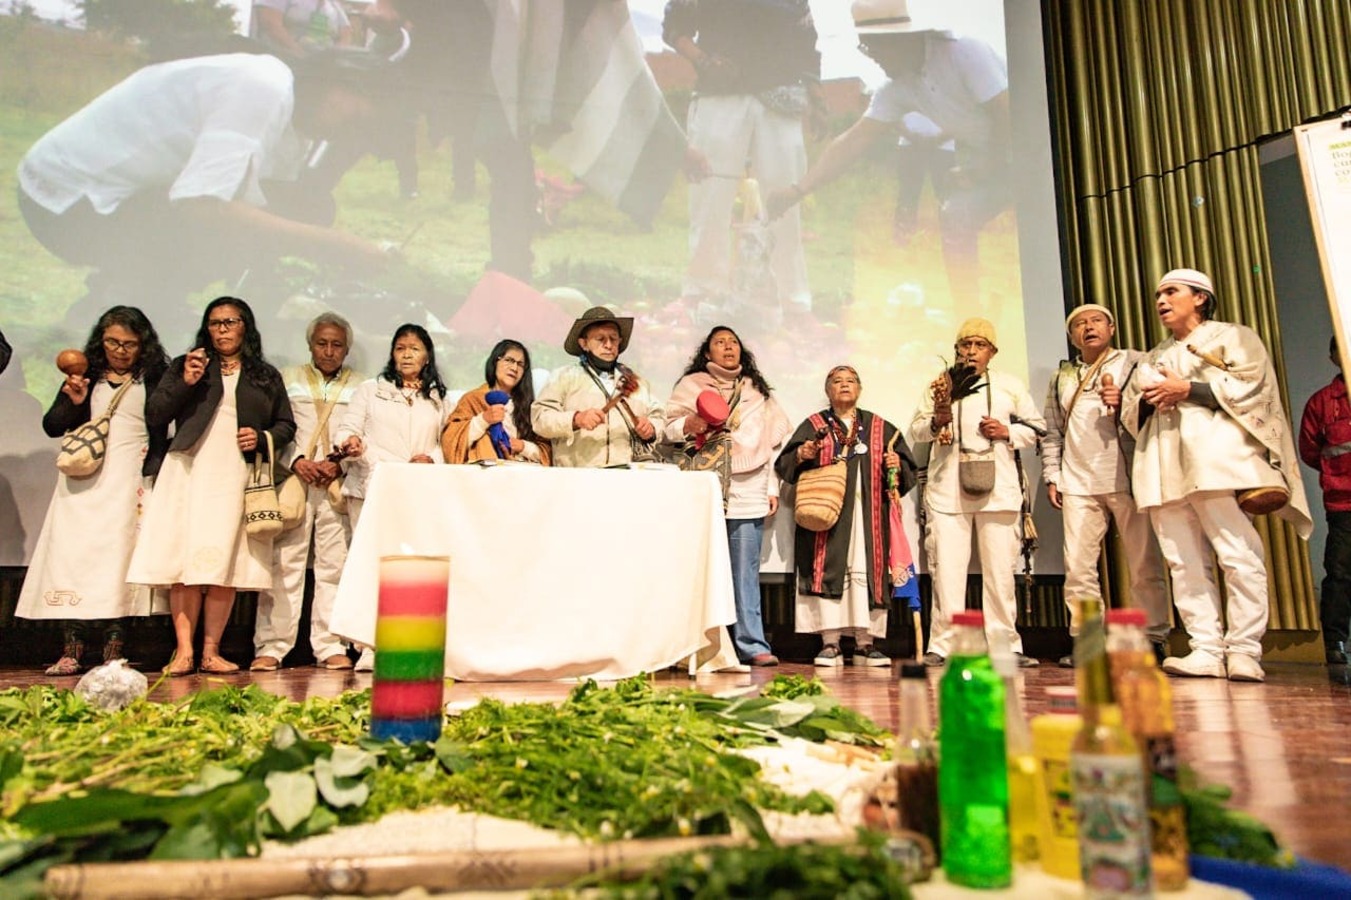 El Distrito le cumplió a las comunidades indígenas de Bogotá con cinco compromisos de inclusión y respeto a su legado histórico